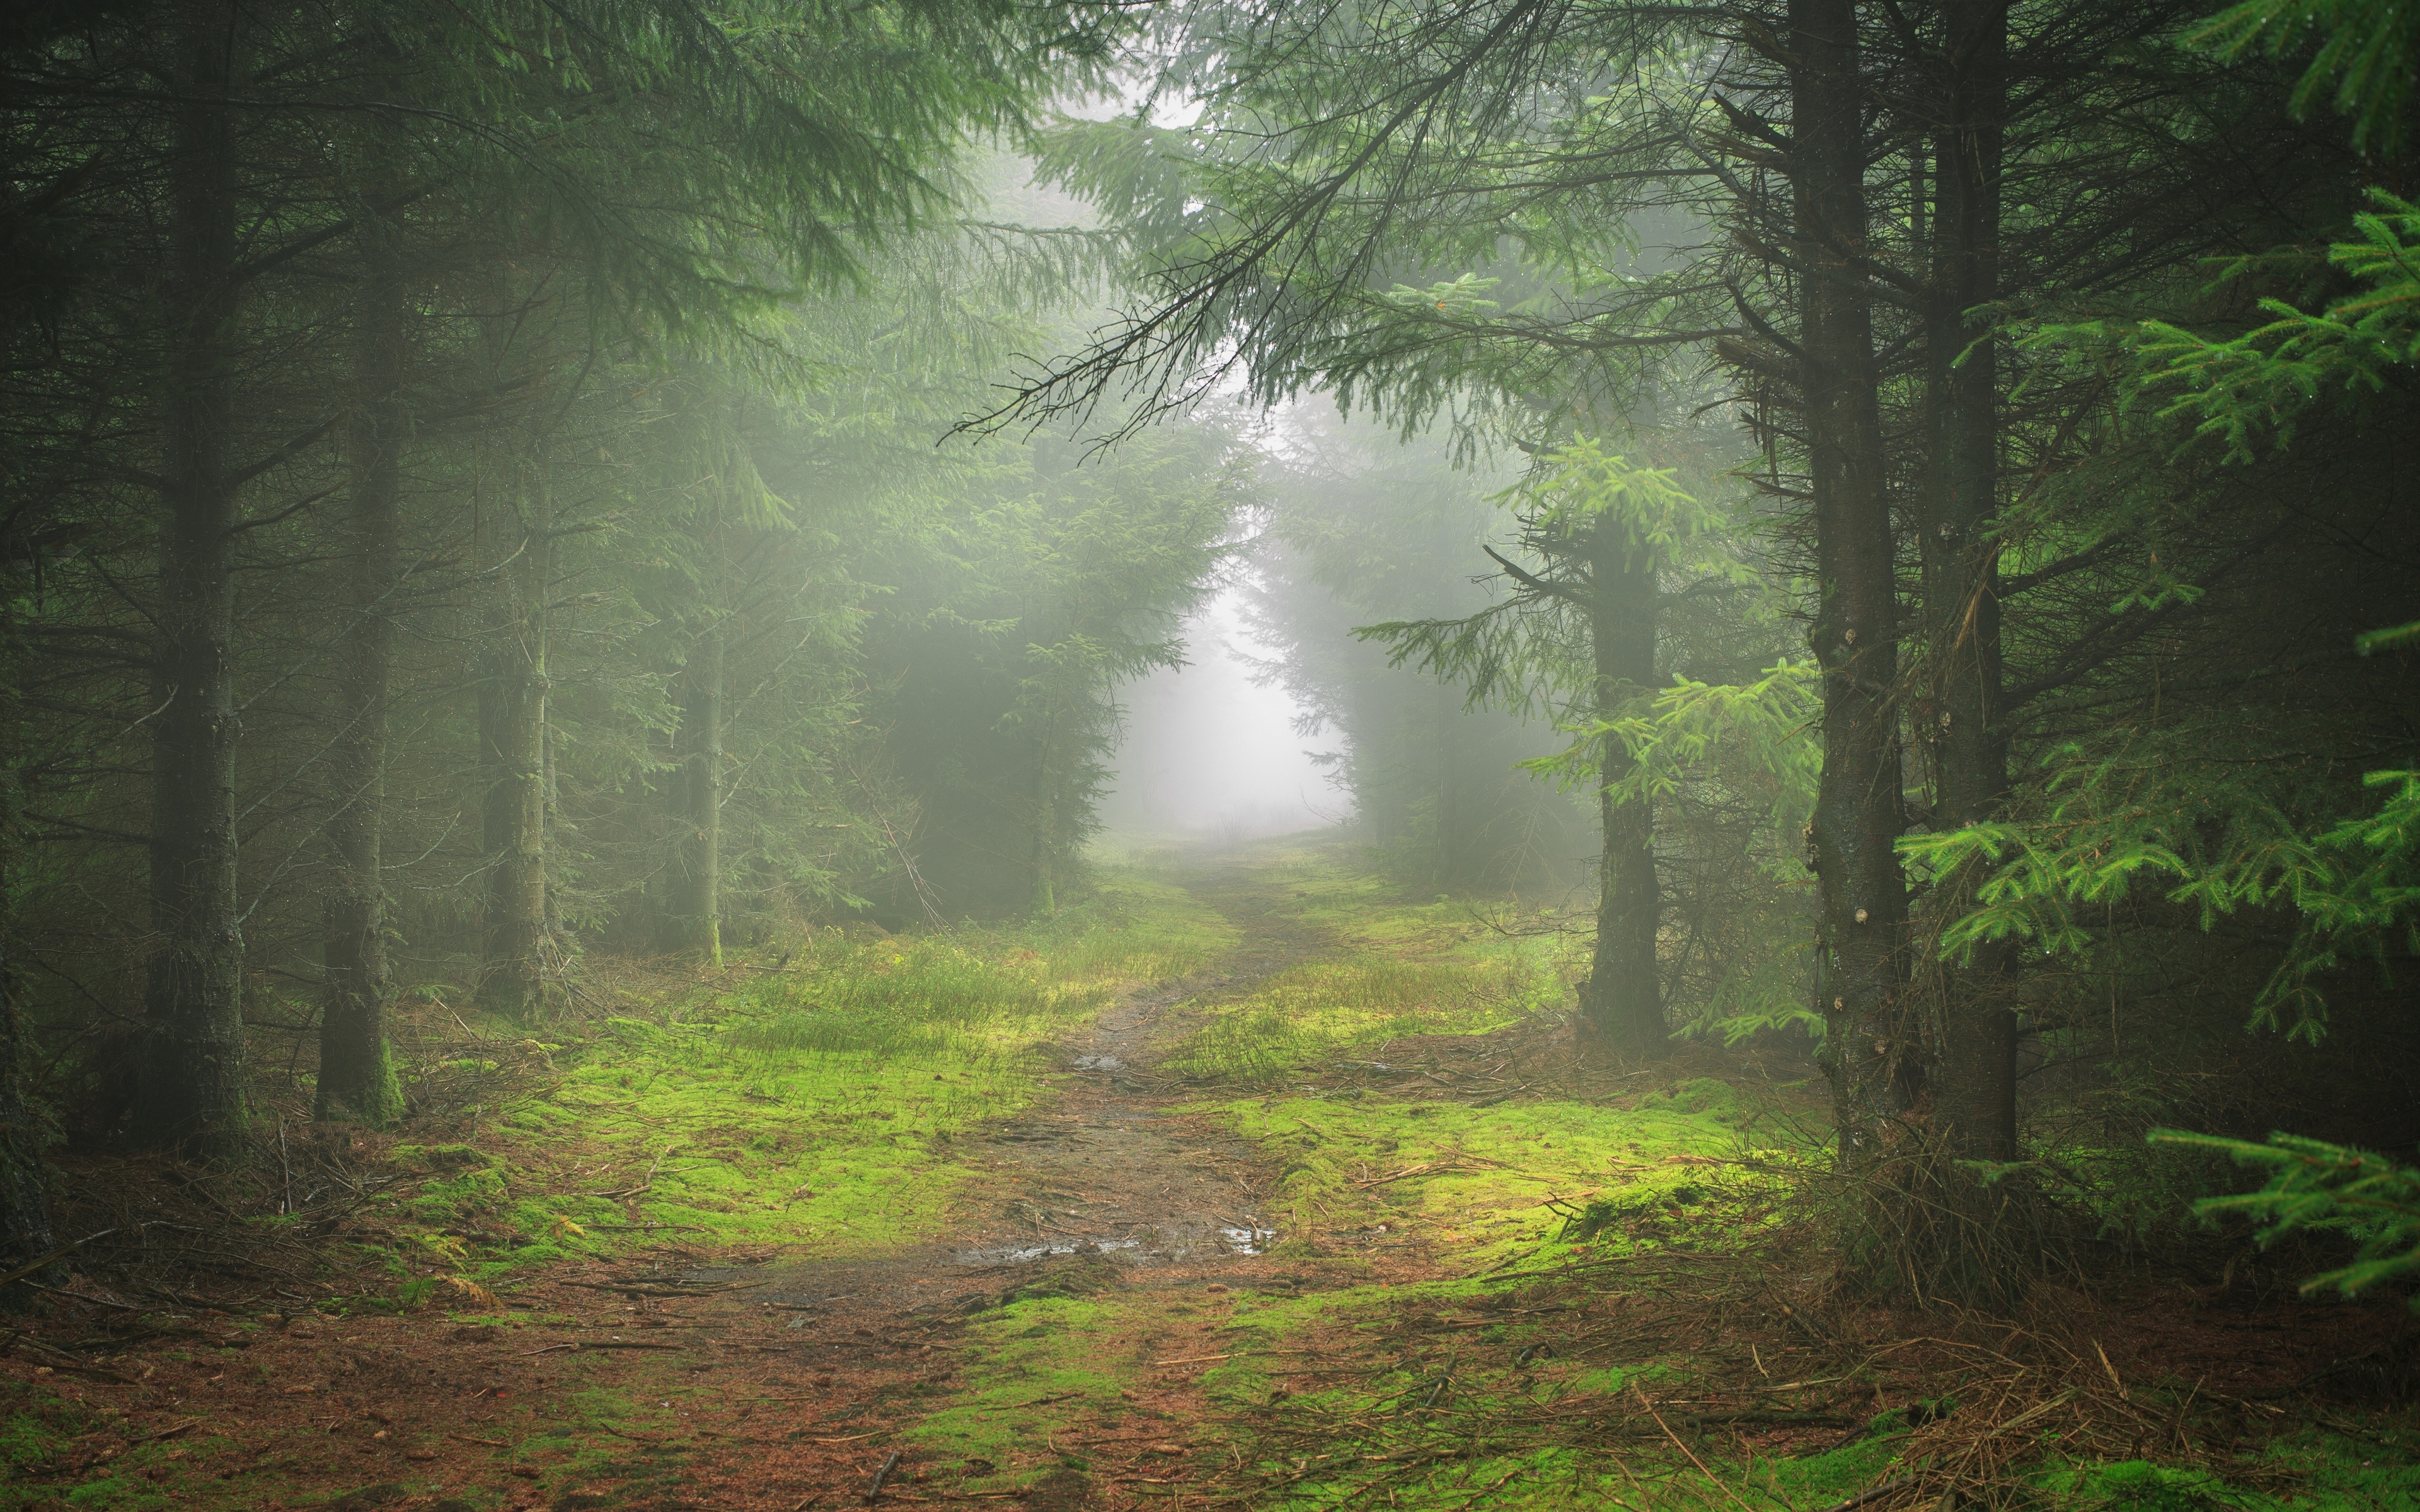 A path through a dense green forest in the fog